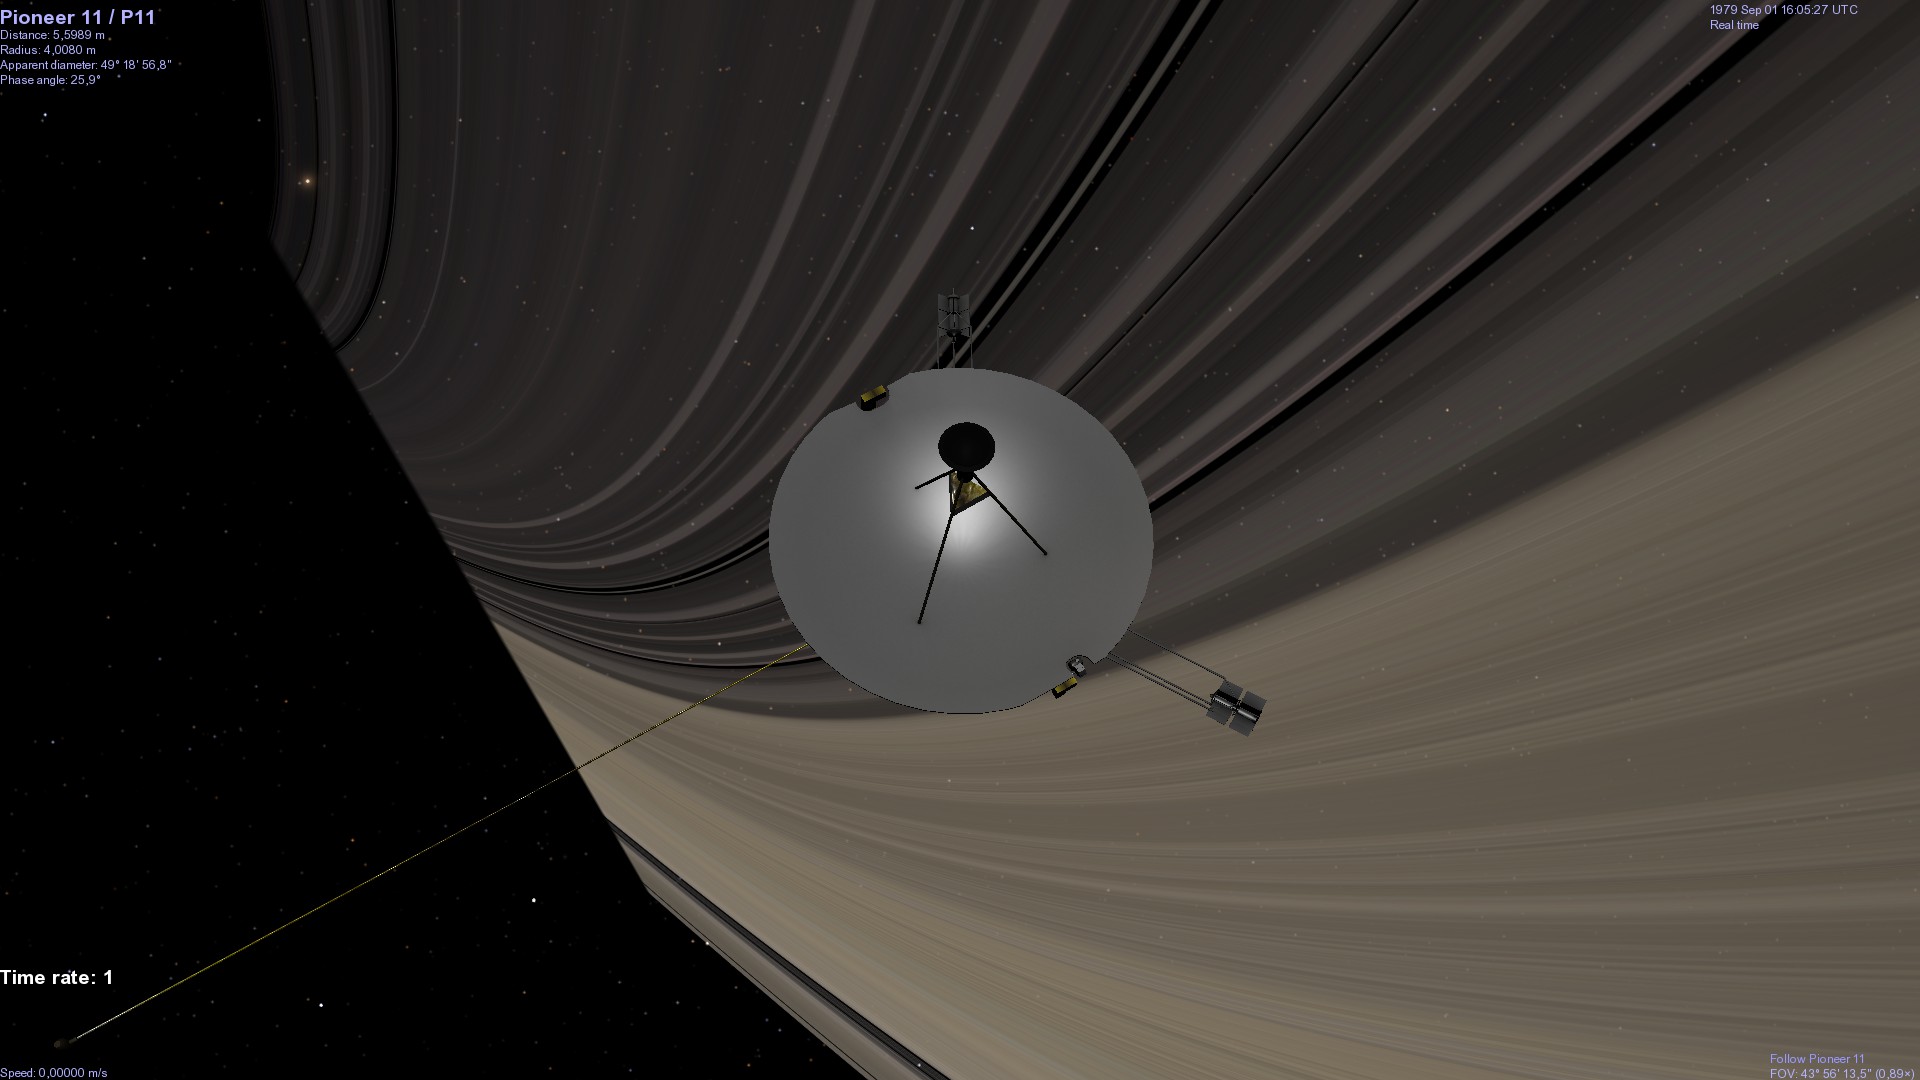 Pioneer 11 & Saturn's rings